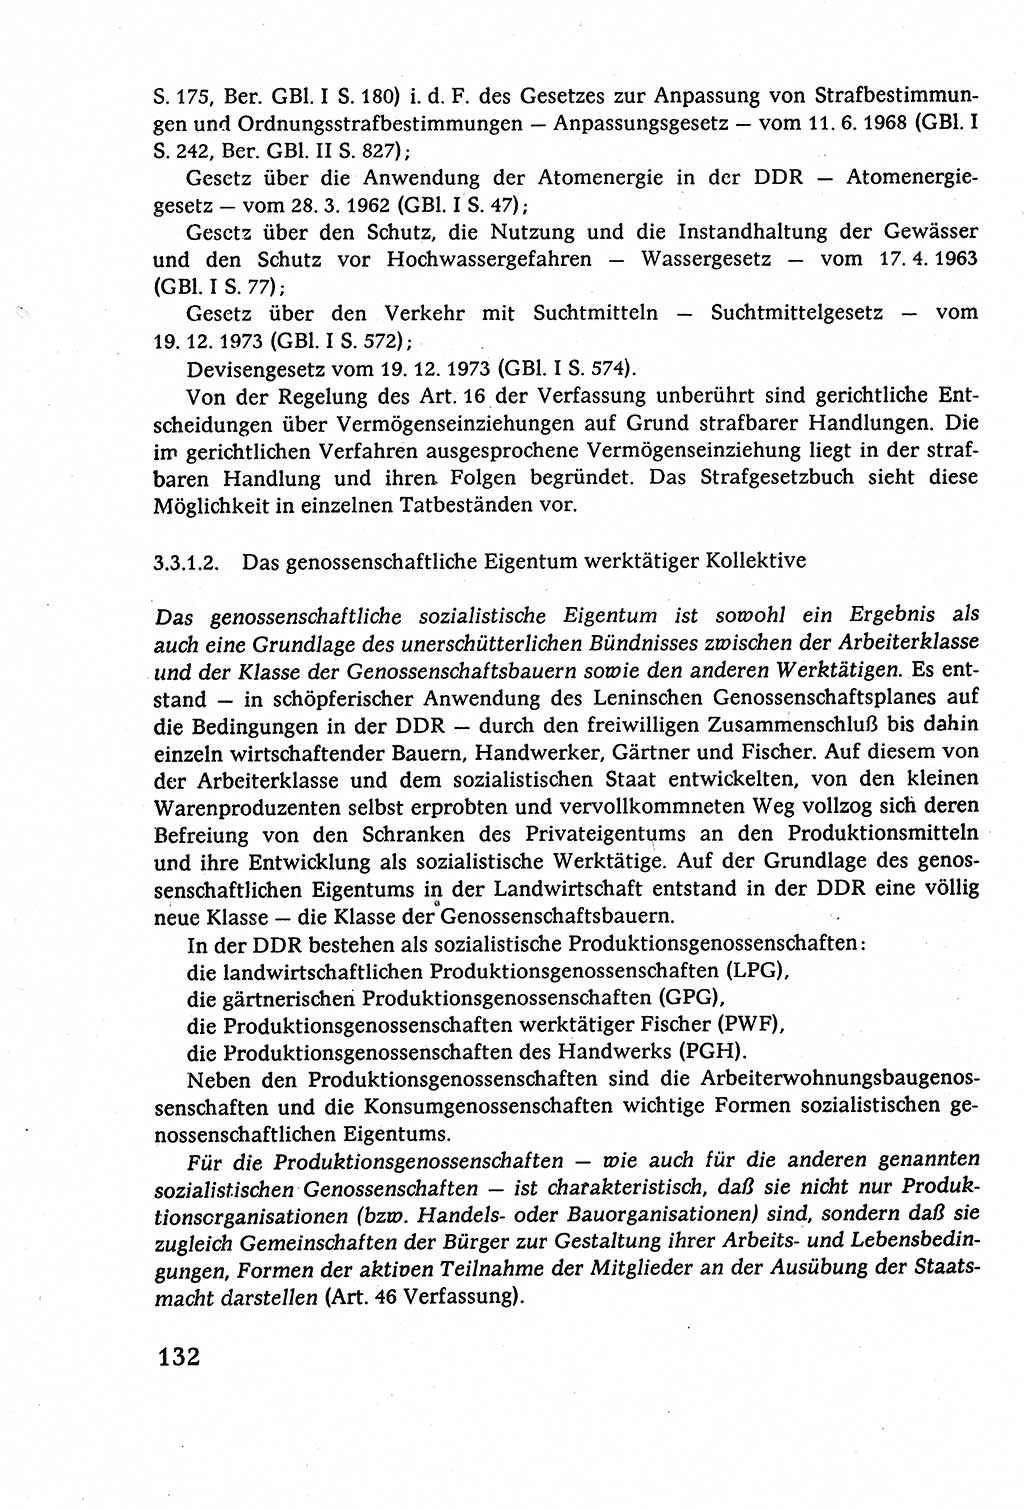 Staatsrecht der DDR (Deutsche Demokratische Republik), Lehrbuch 1977, Seite 132 (St.-R. DDR Lb. 1977, S. 132)